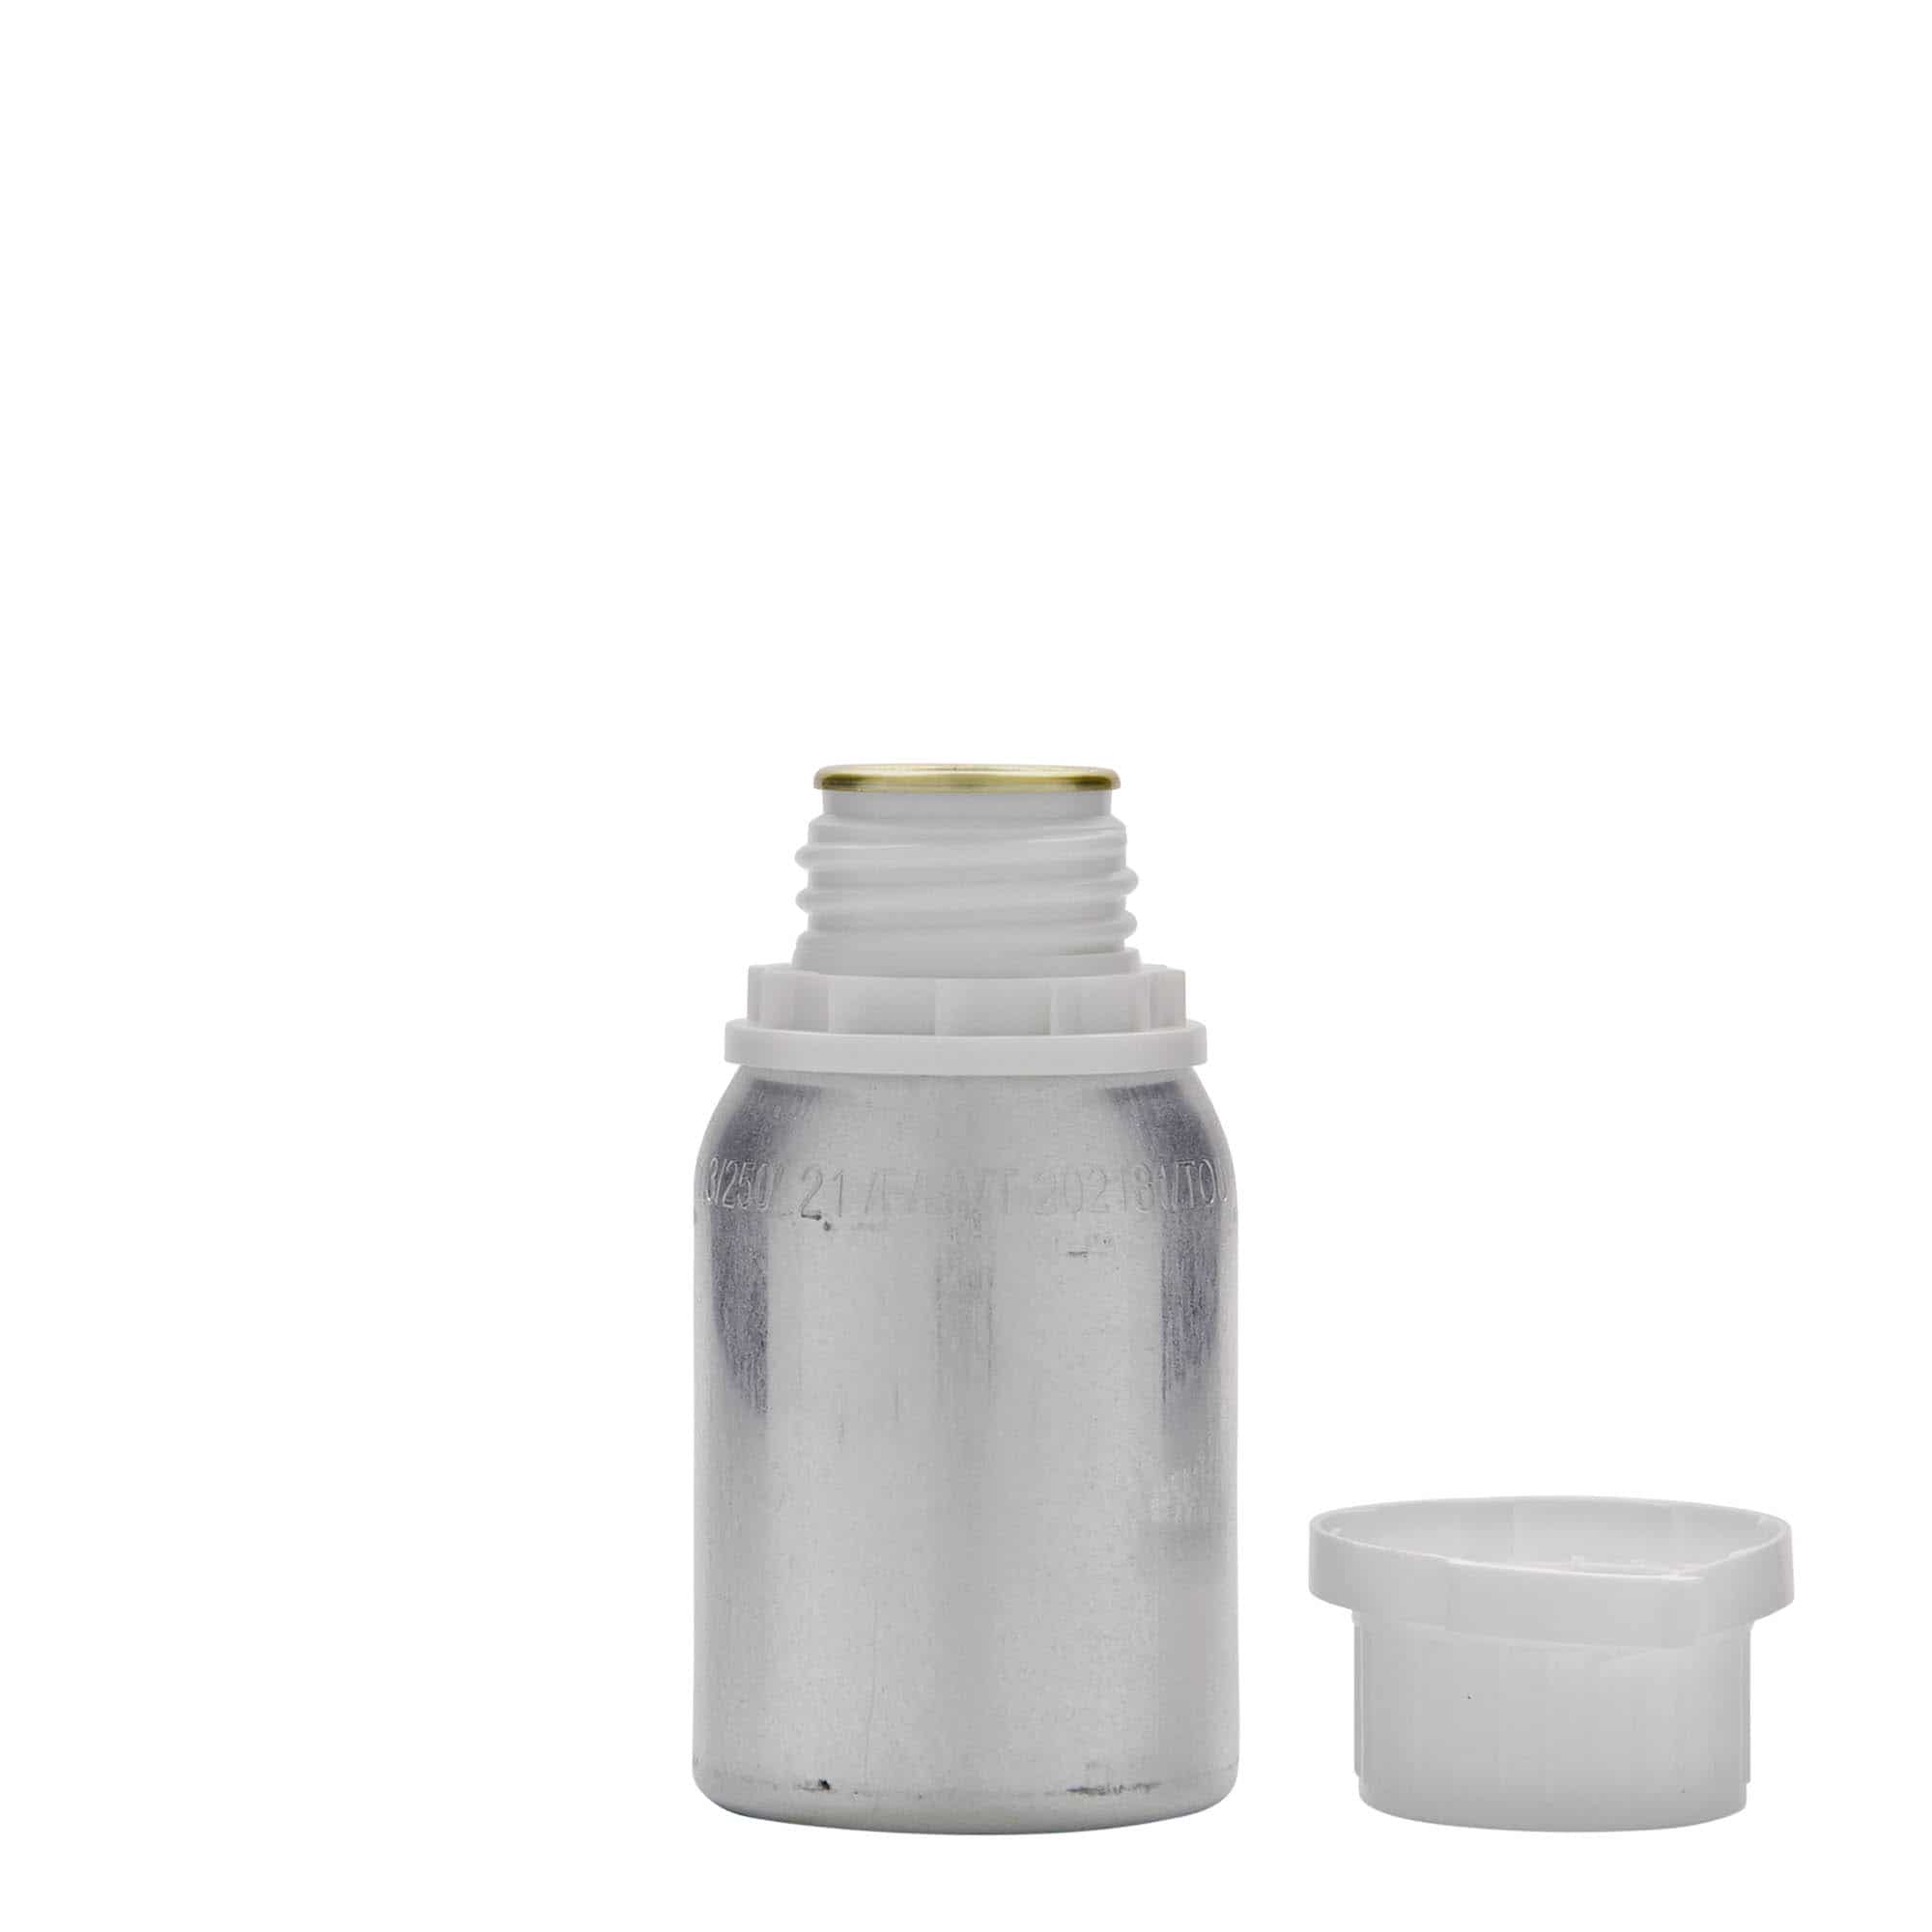 125 ml Bottiglia in alluminio, metallo, argento, imboccatura: DIN 32